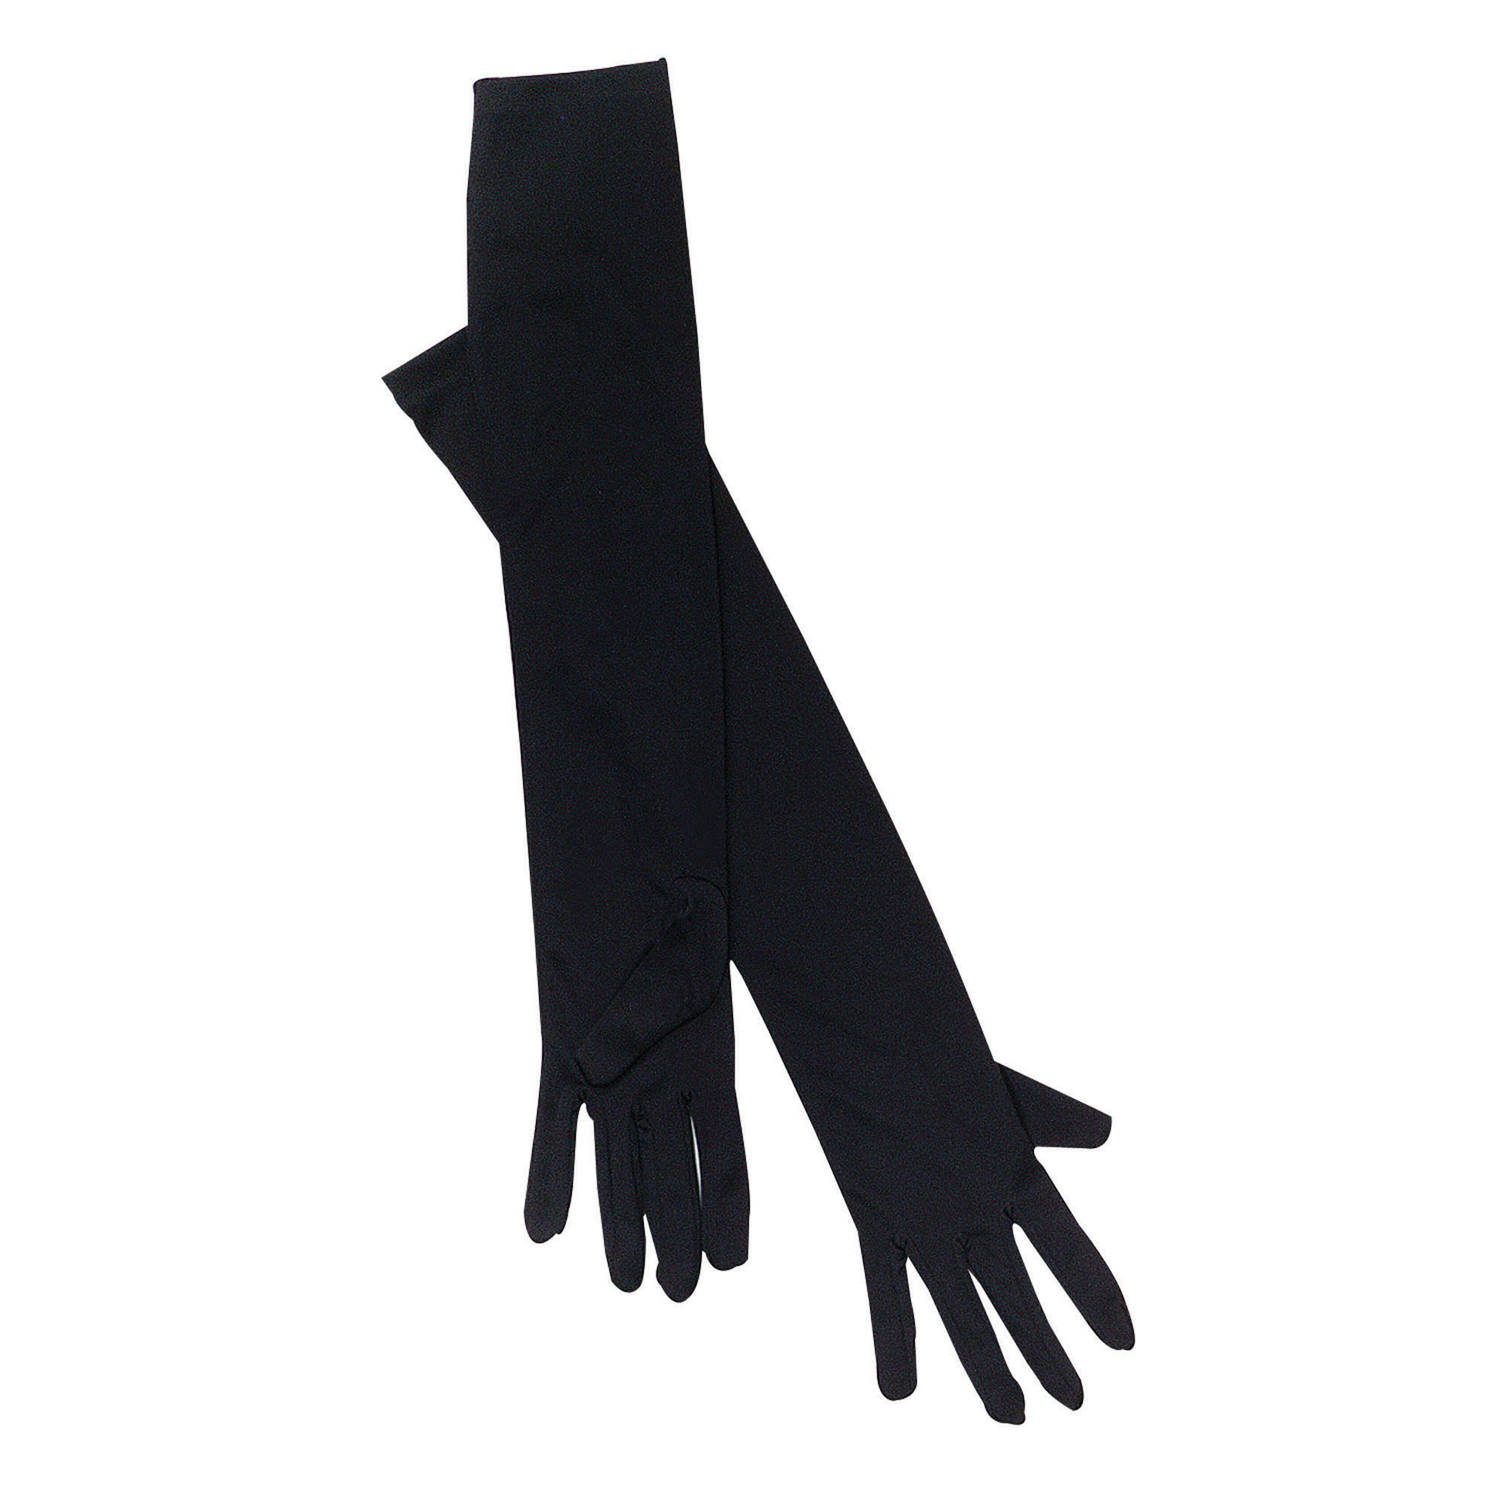 Verkleed handschoenen voor dames zwart one size lang model Verkleedhandschoenen